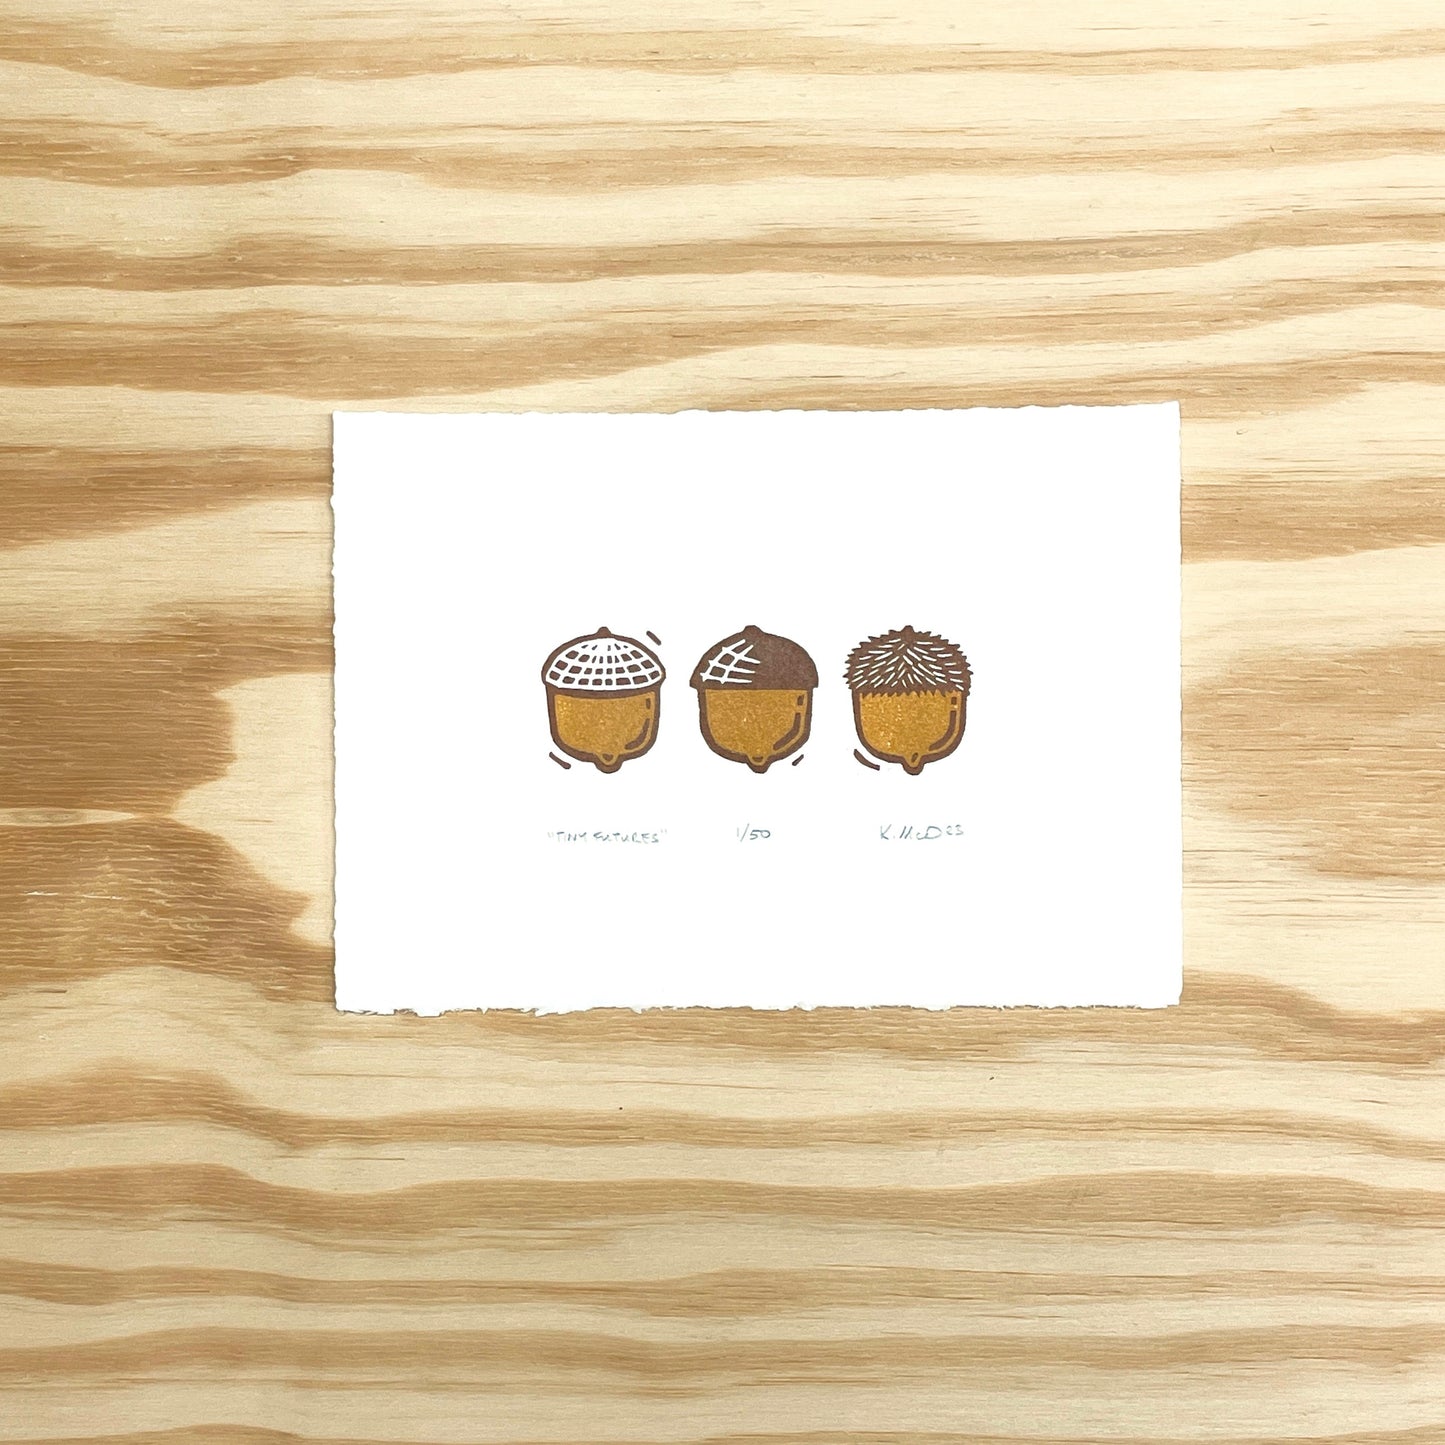 Tiny Futures Acorns - woodblock print (5x7")